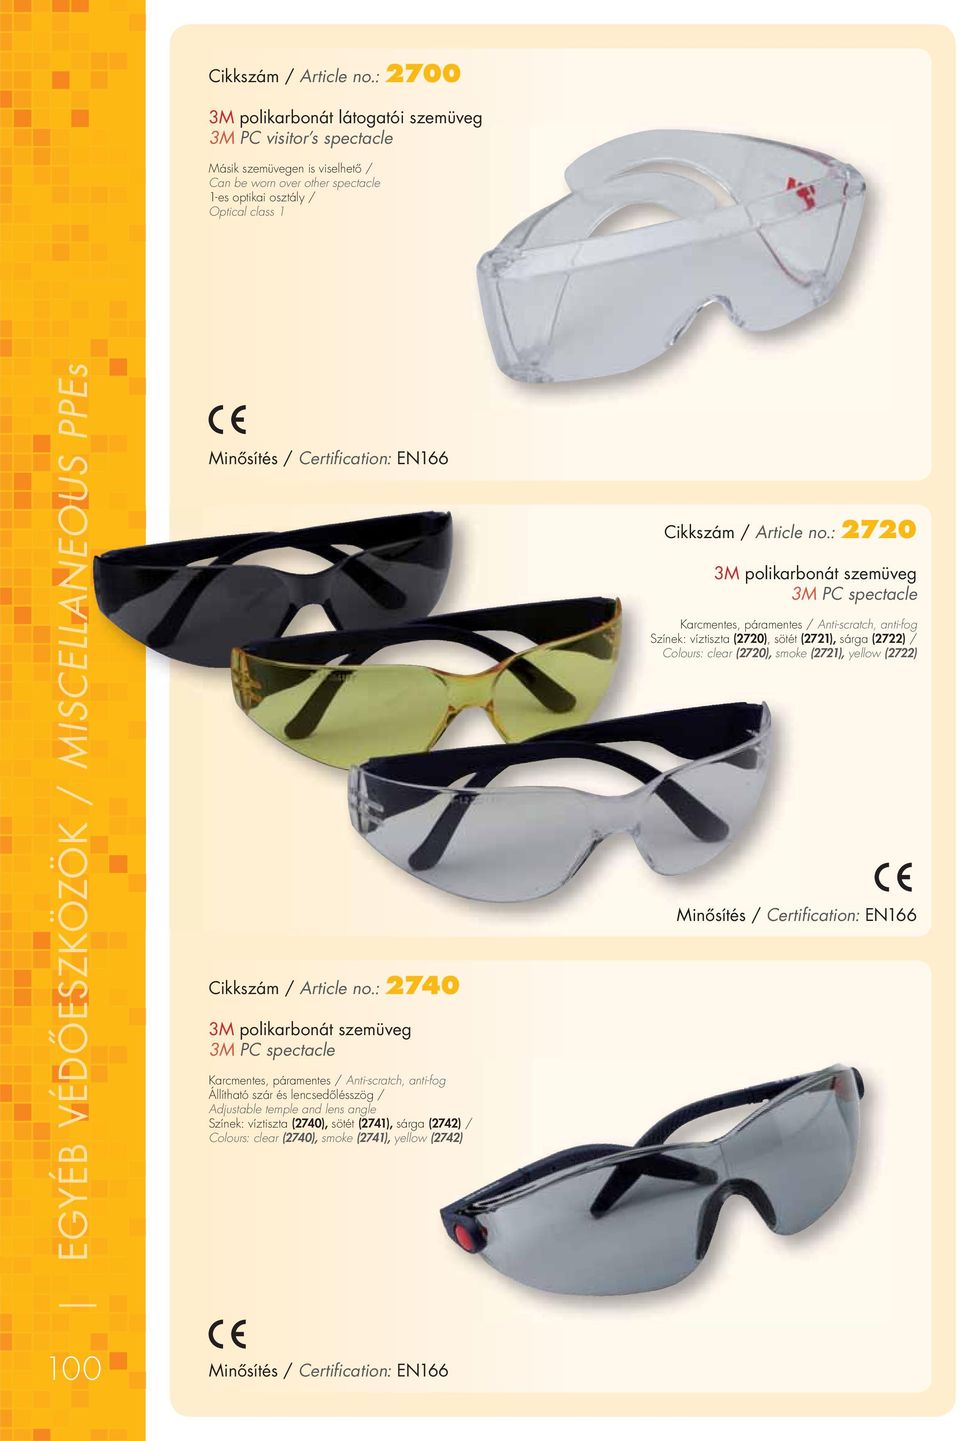 3M polikarbonát szemüveg 3M PC spectacle Karcmentes, páramentes / Anti-scratch, anti-fog Állítható szár és lencsedôlésszög / Adjustable temple and lens angle Színek: víztiszta